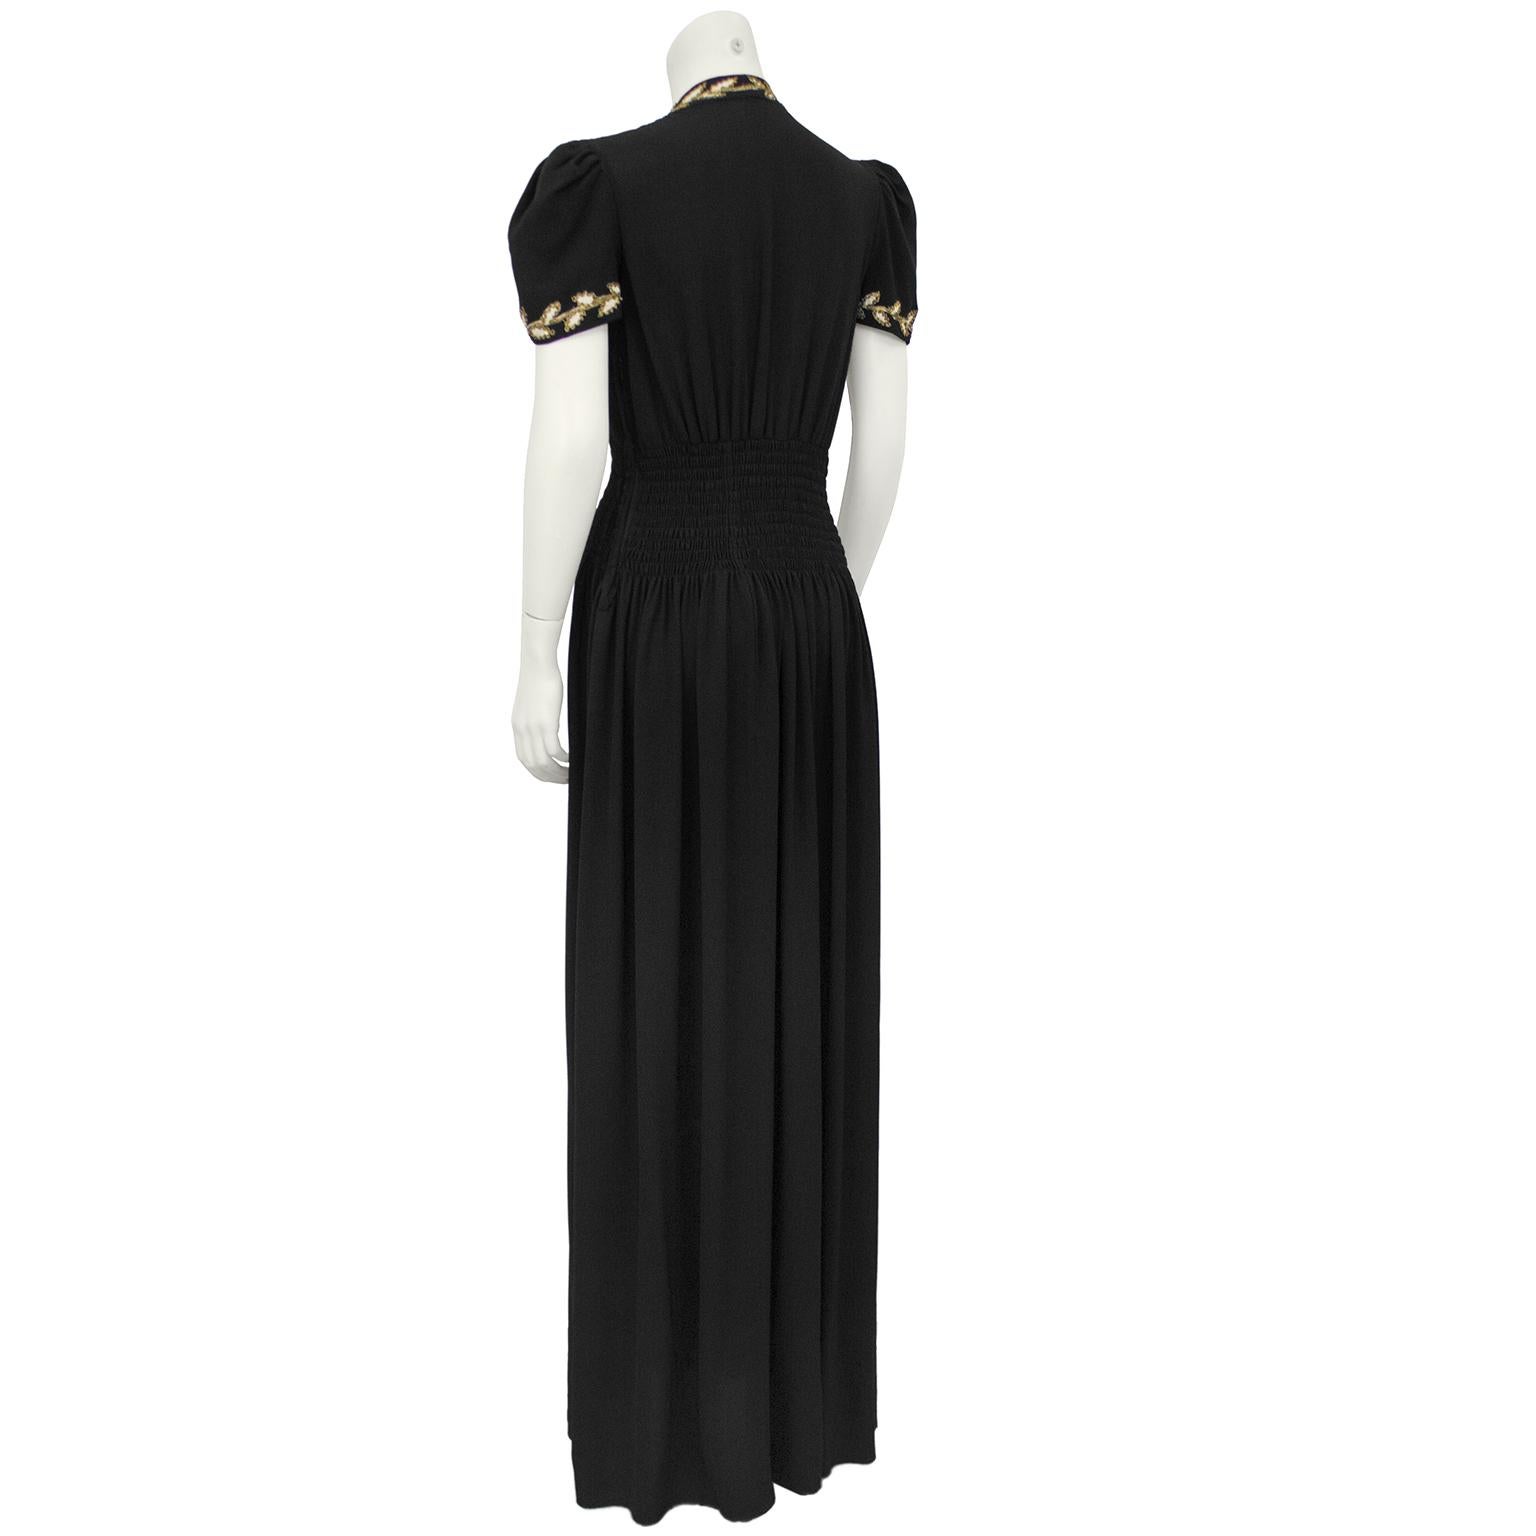 1930s crepe dress